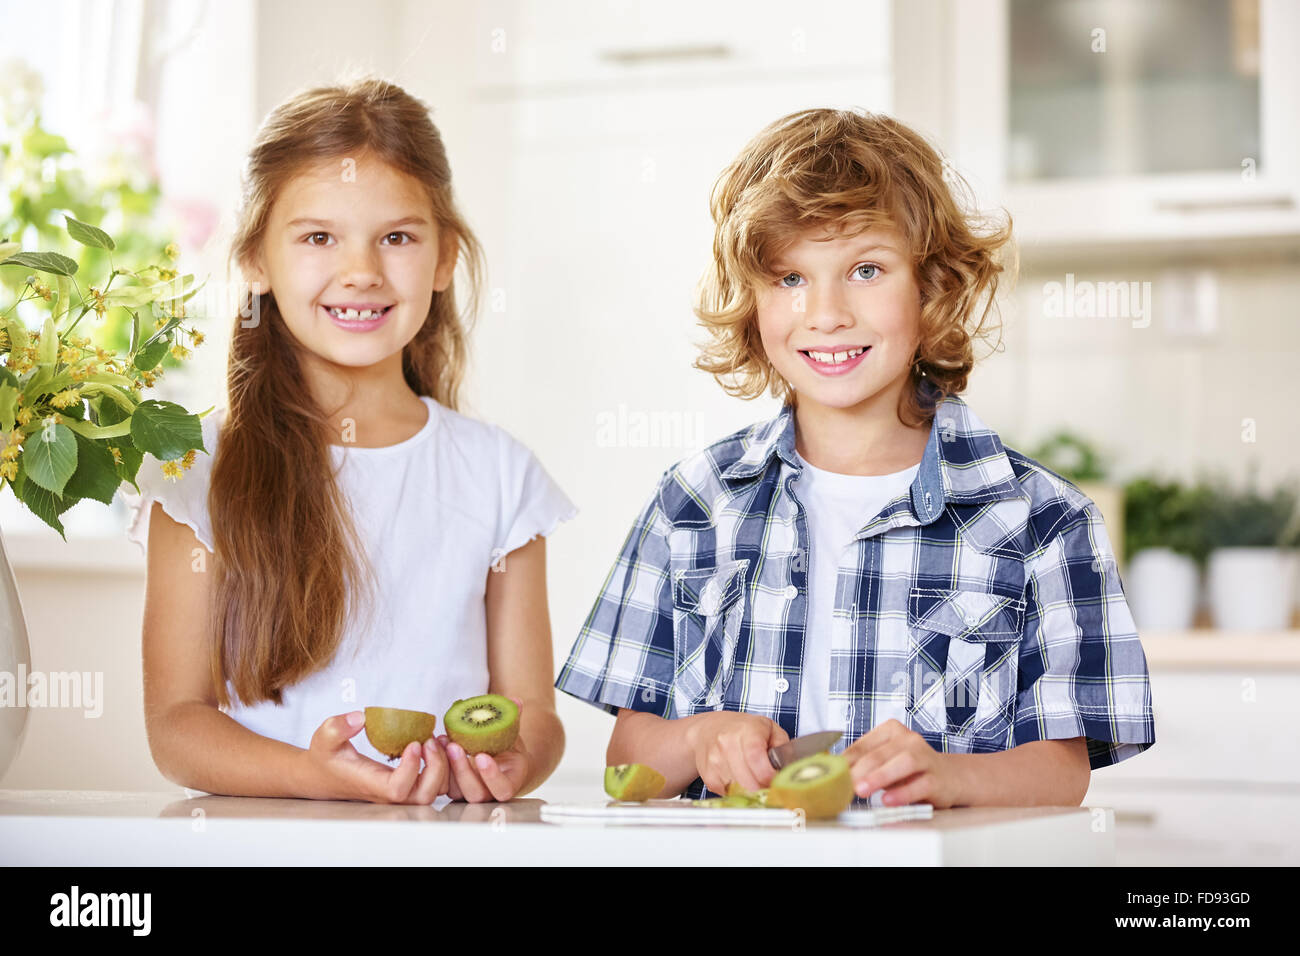 Zwei glückliche Kinder schneiden eine Kiwi in einer Küche Stockfoto